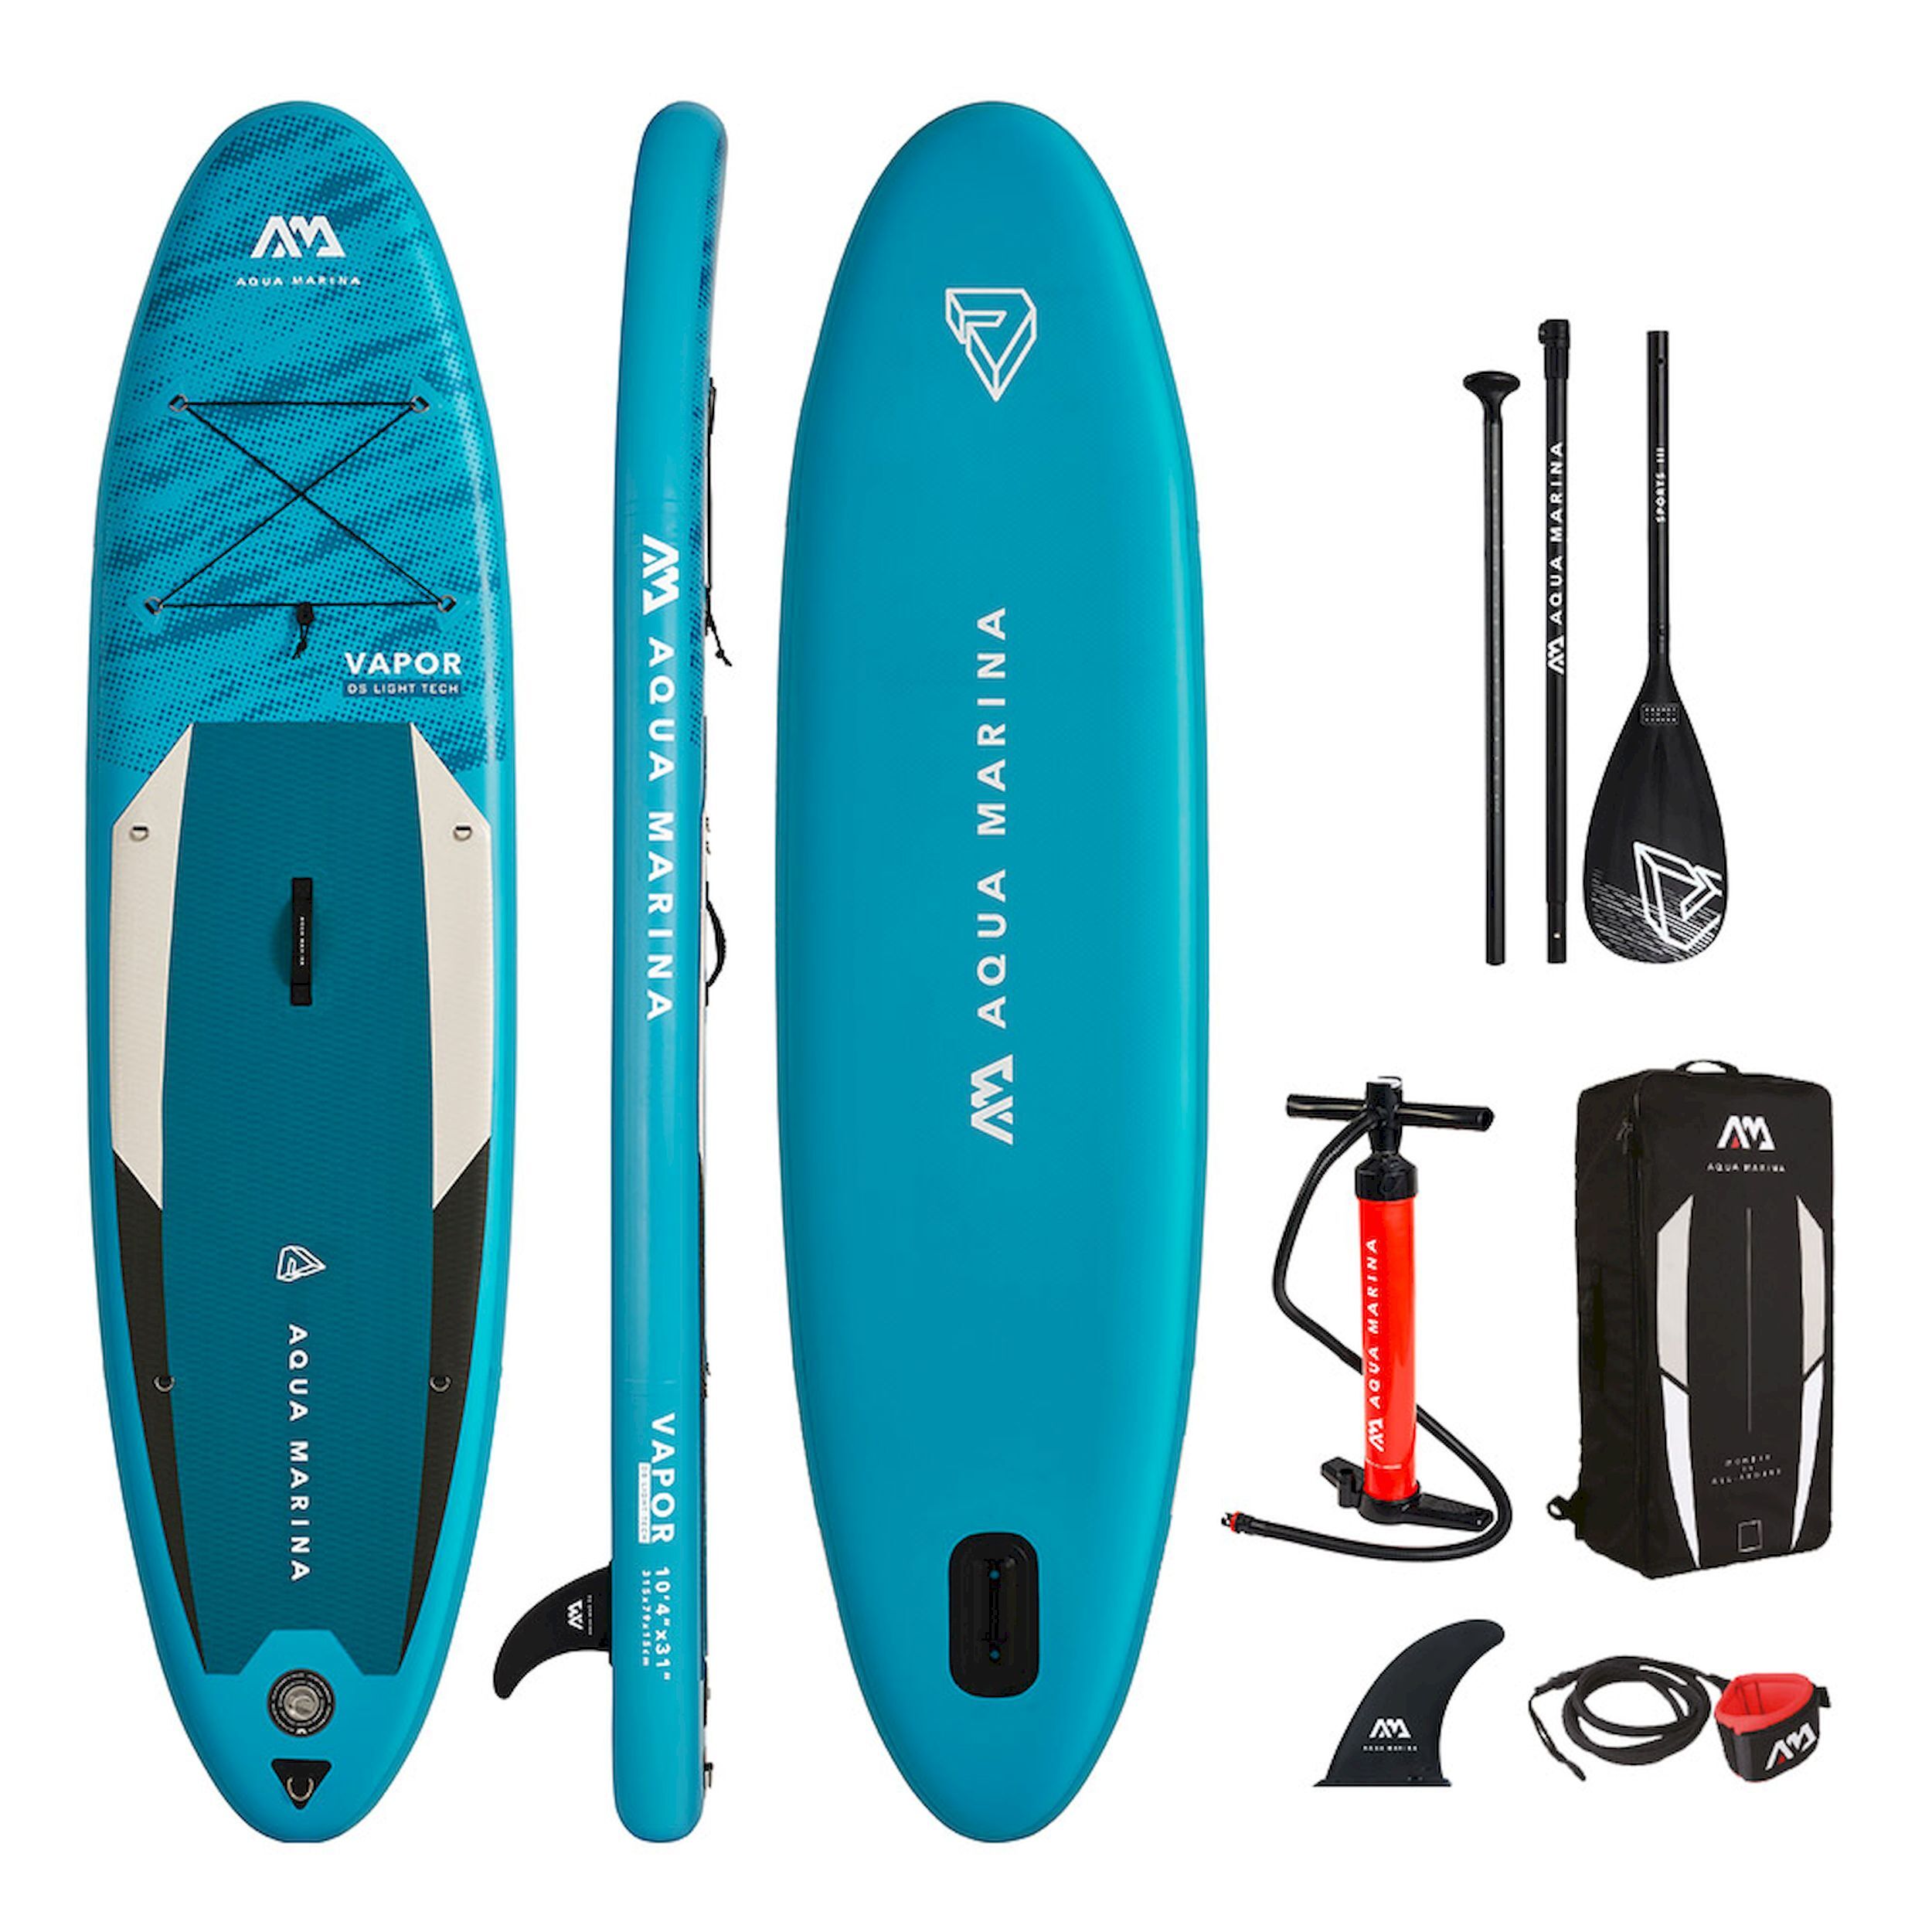 Aqua Marina Vapor - Inflatable paddle board